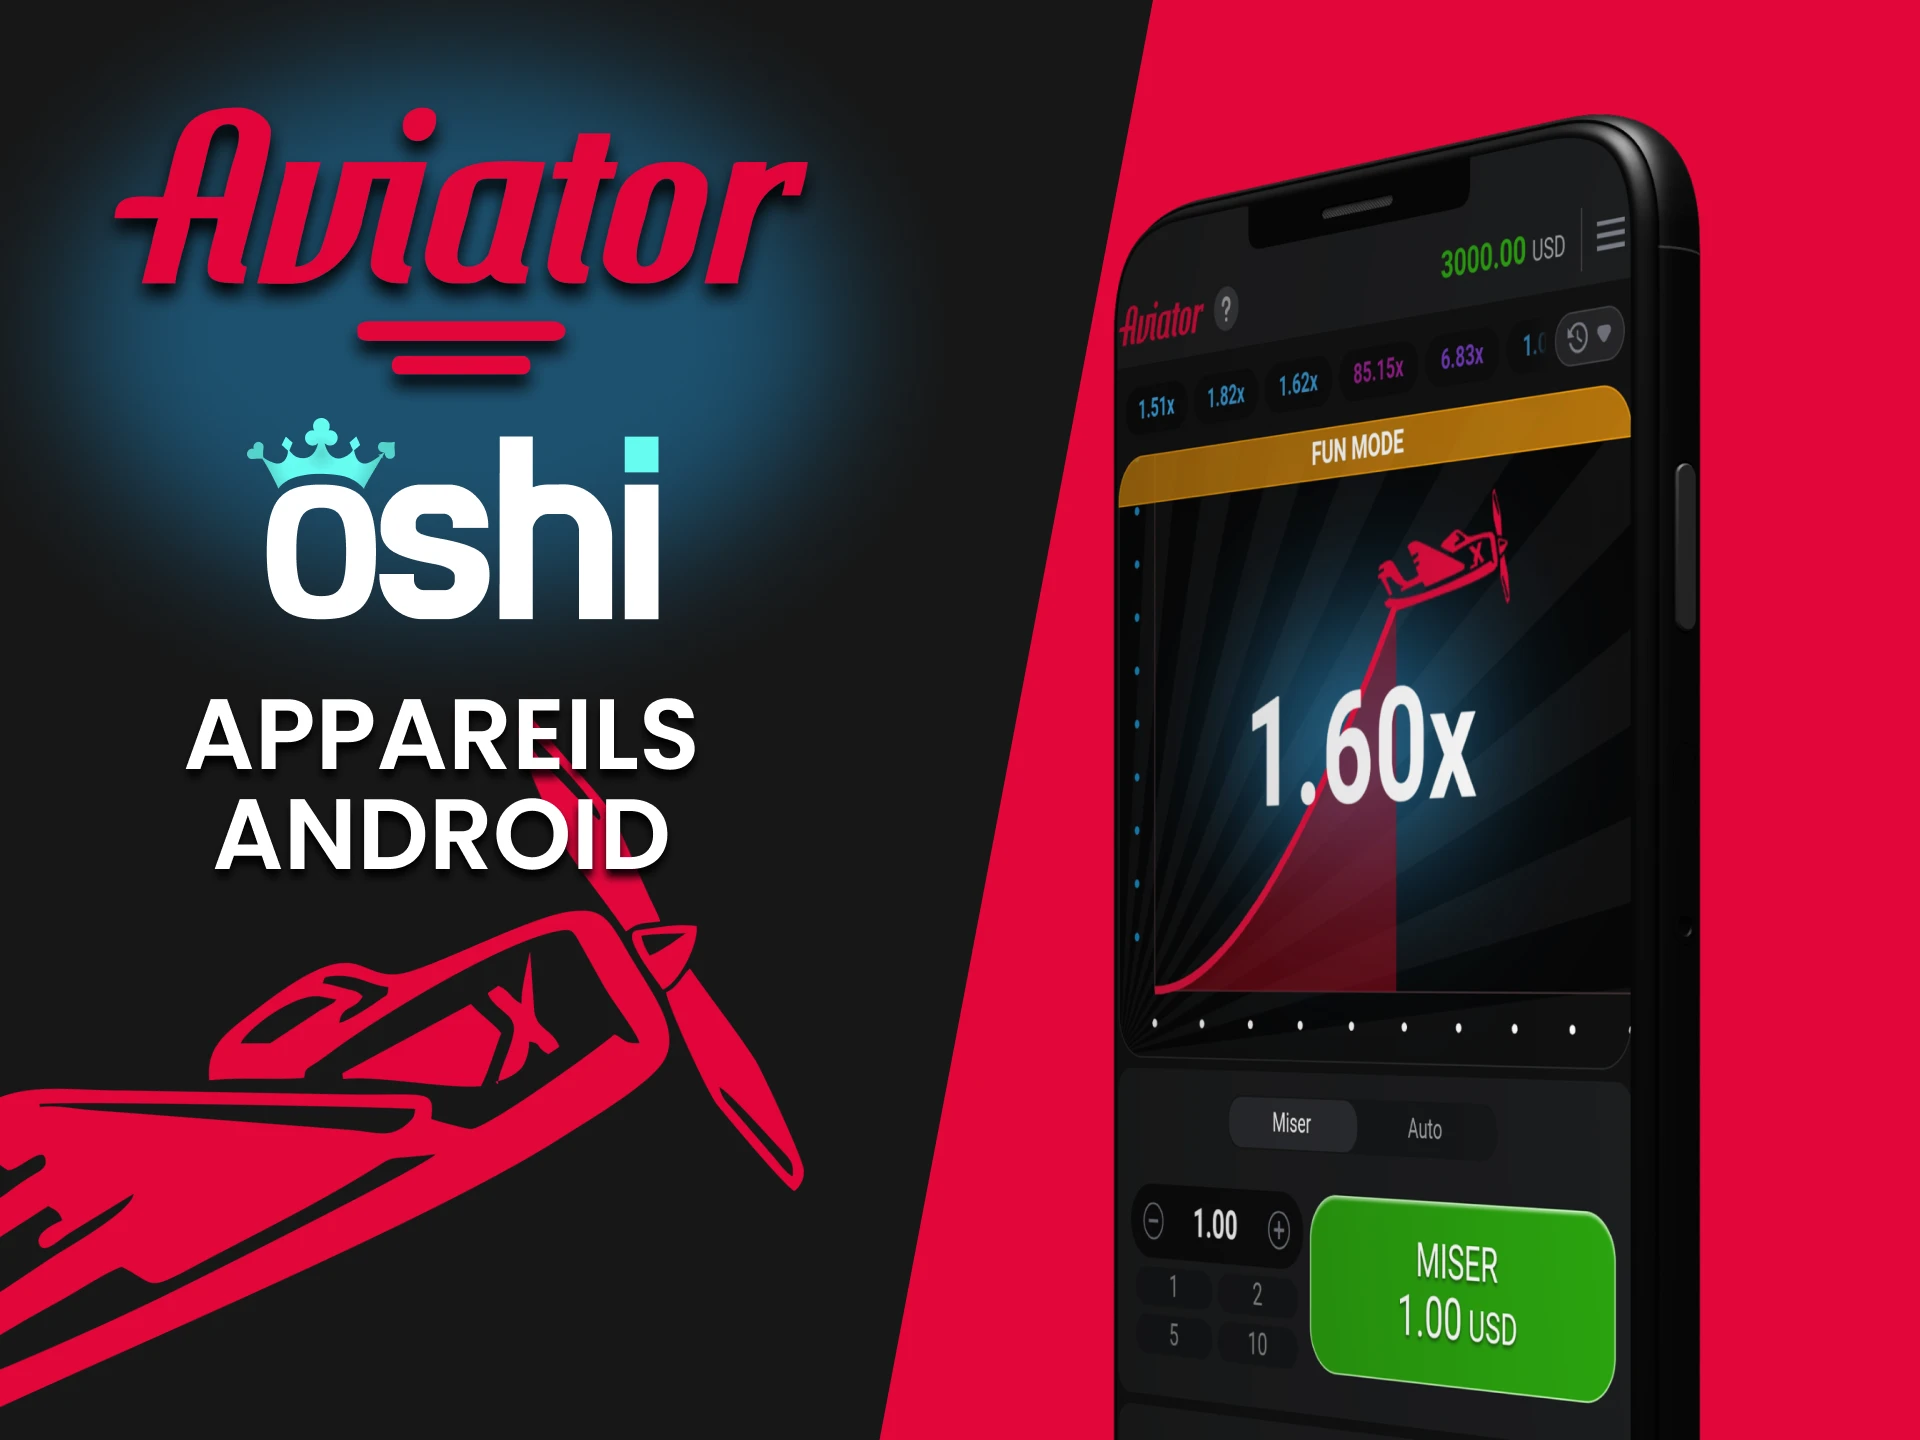 Installez l'application Oshi Casino pour jouer à Aviator sur Android.